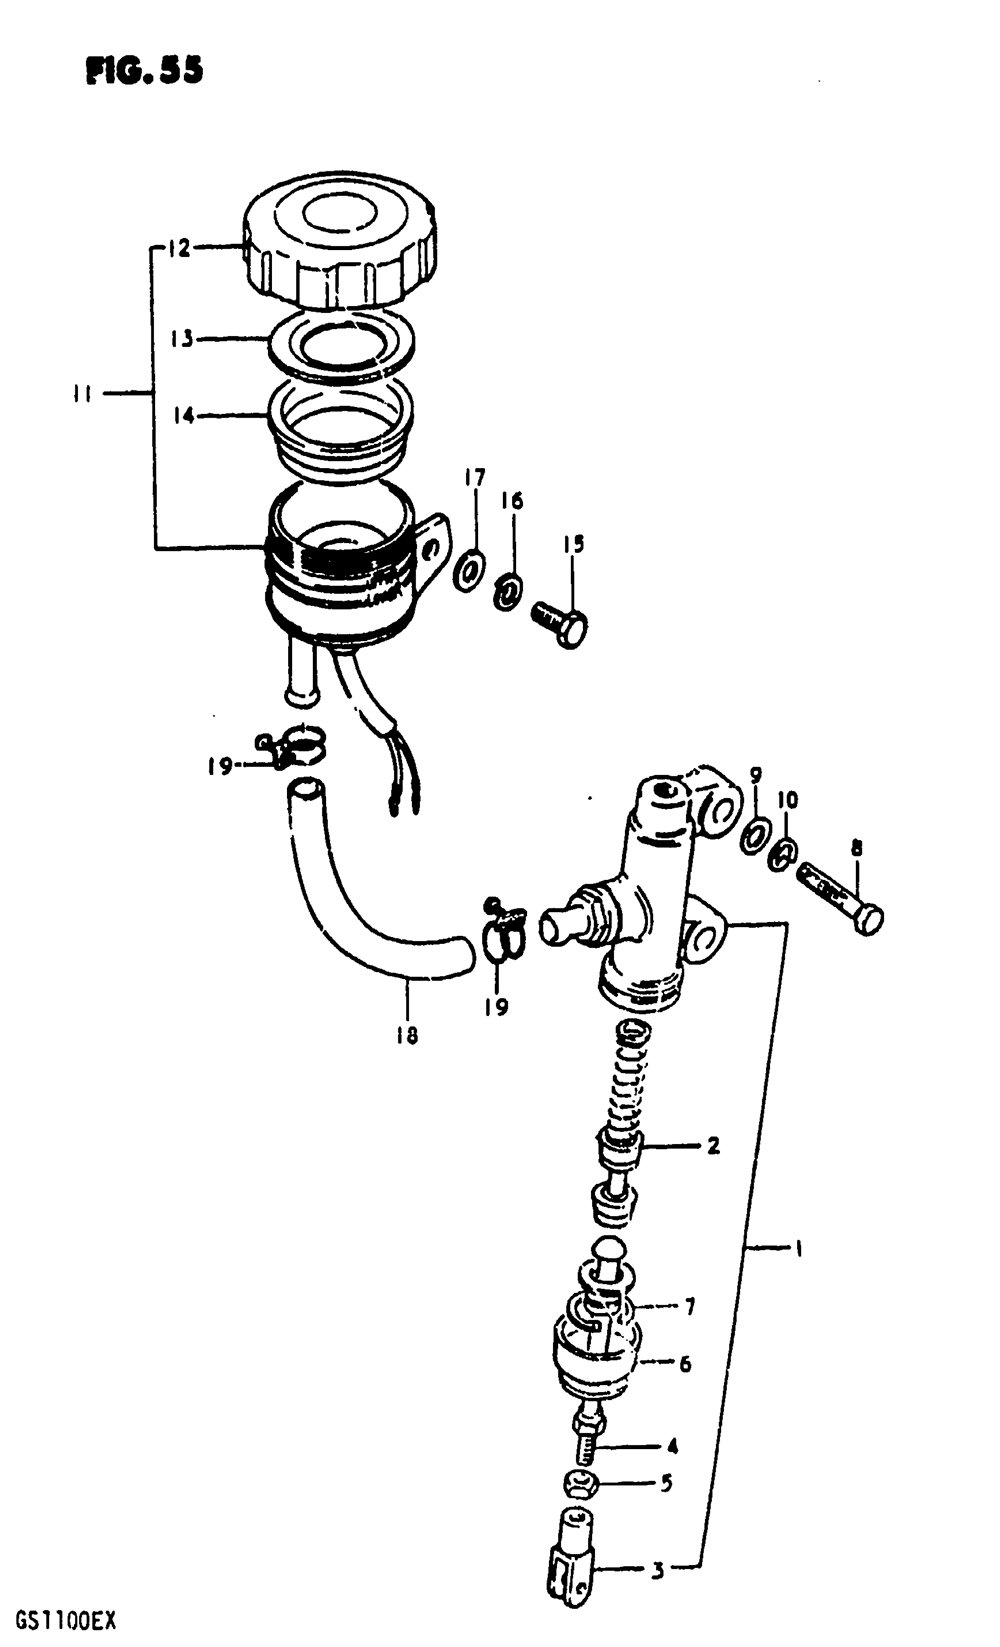 Master cylinder (gs1100et)